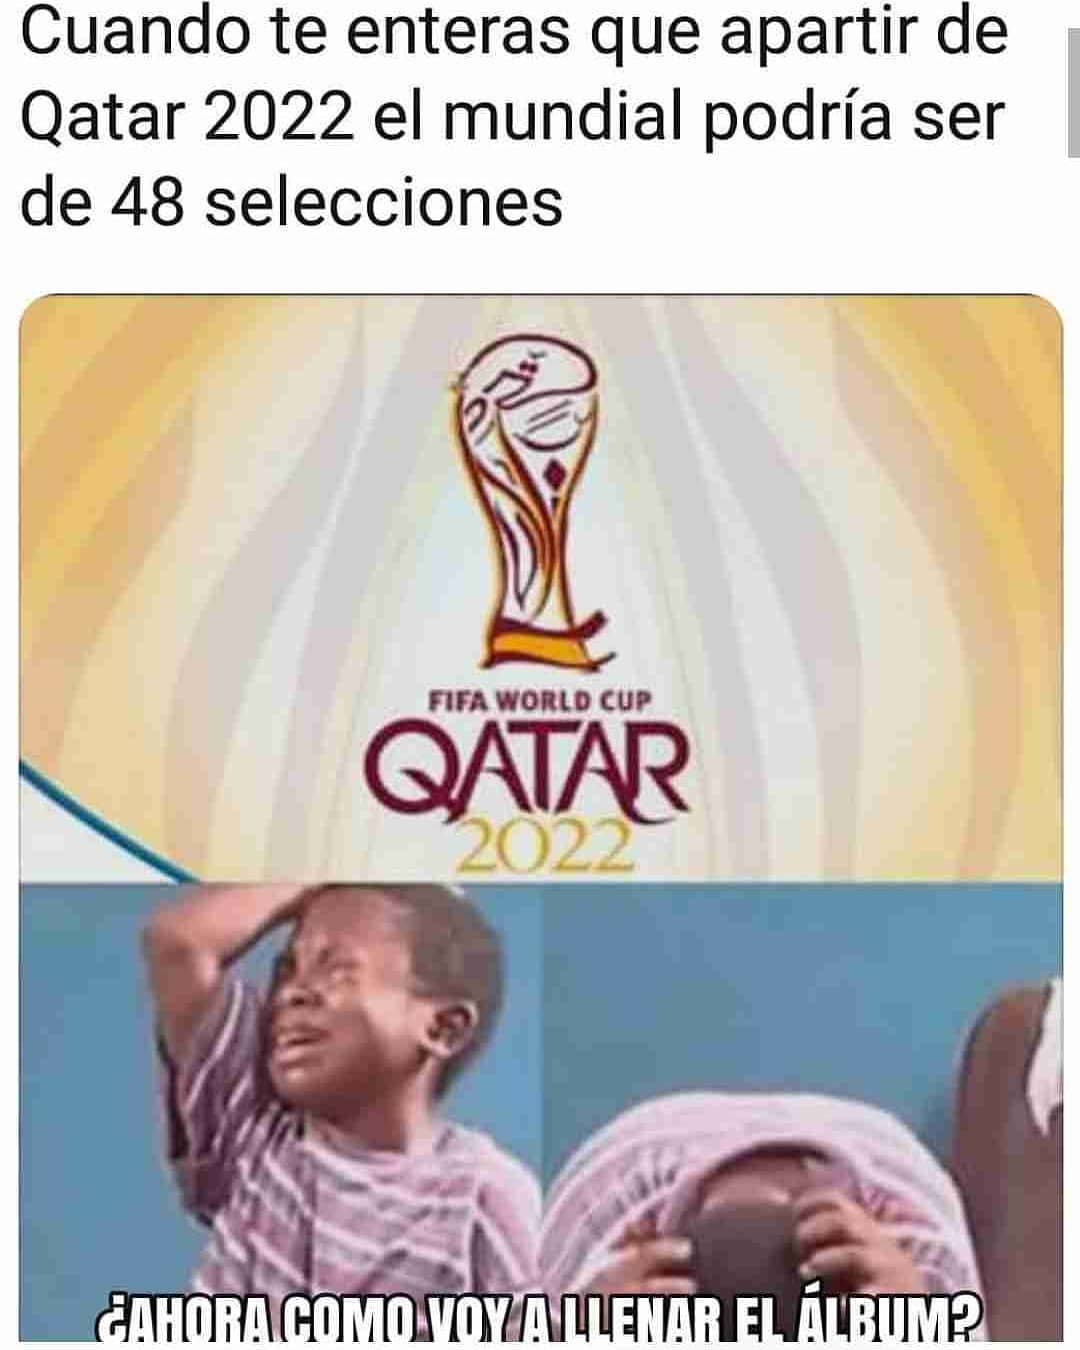 Cuando te enteras que apartir de Qatar 2022 el mundial podría ser de 48 selecciones.